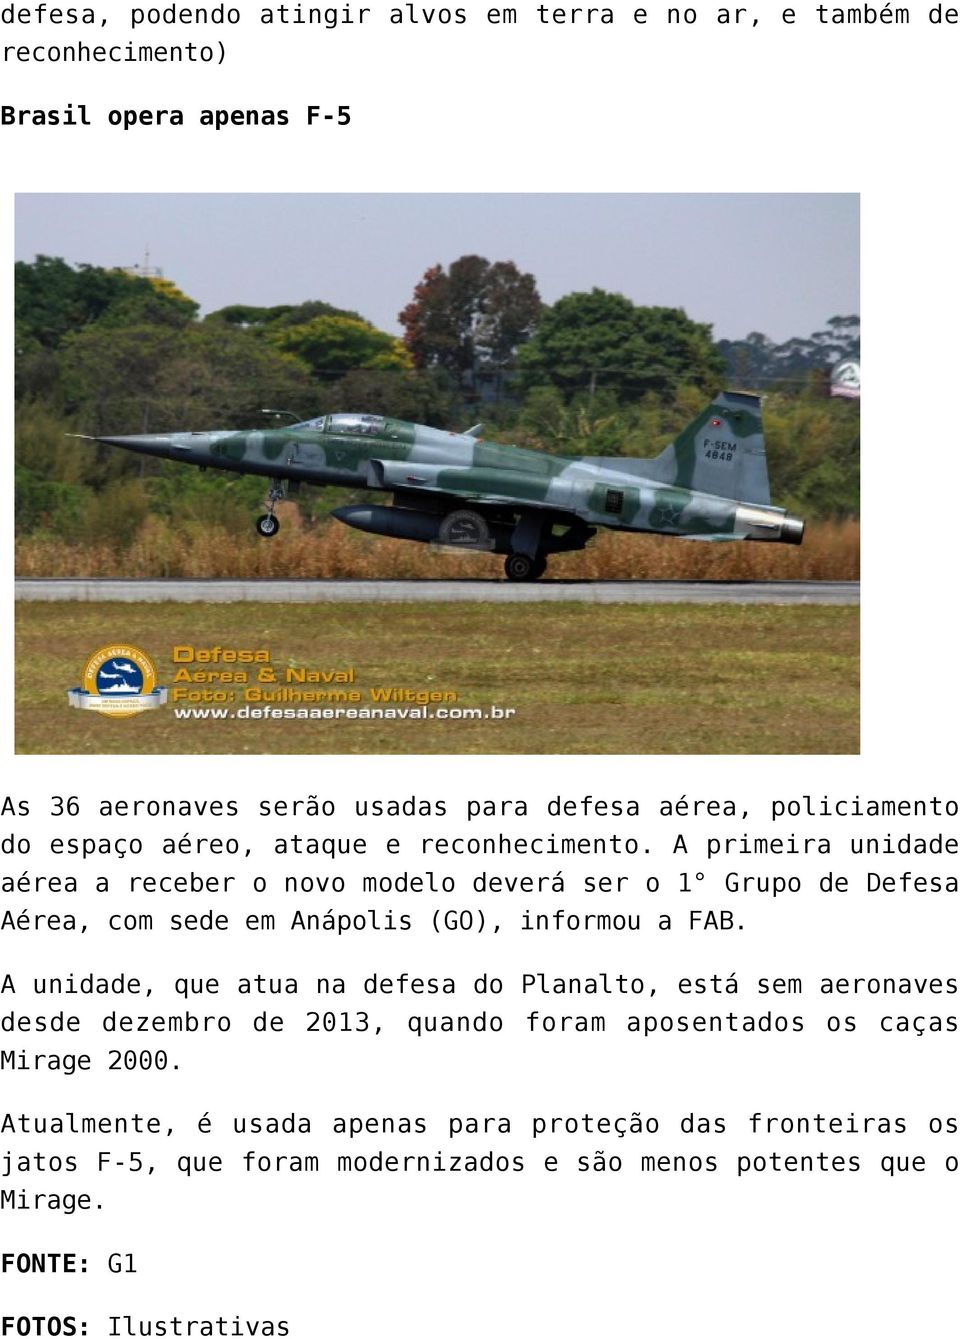 A primeira unidade aérea a receber o novo modelo deverá ser o 1 Grupo de Defesa Aérea, com sede em Anápolis (GO), informou a FAB.